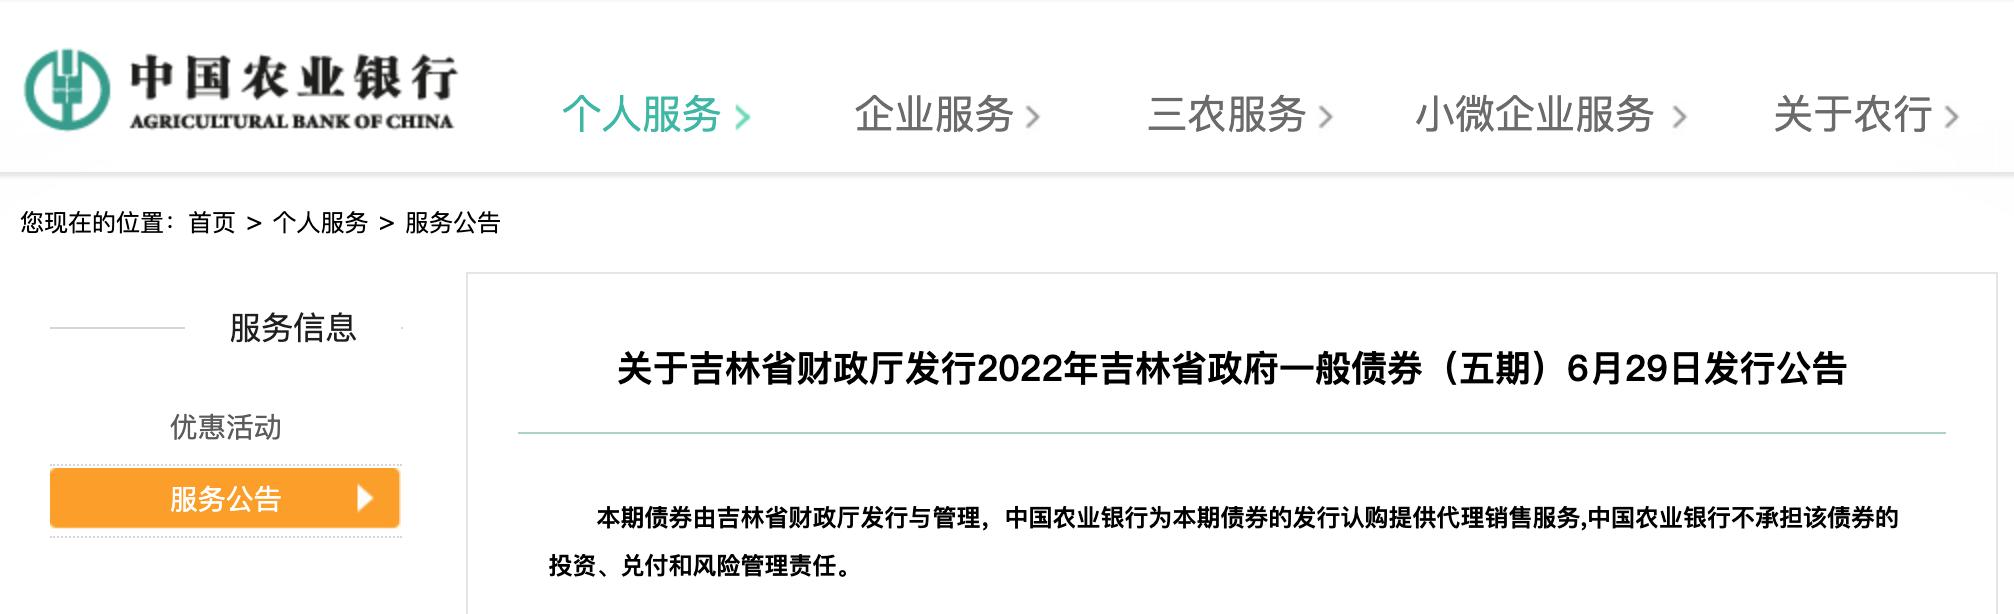 中国农业银行通告「2021年农业银行最近新闻」